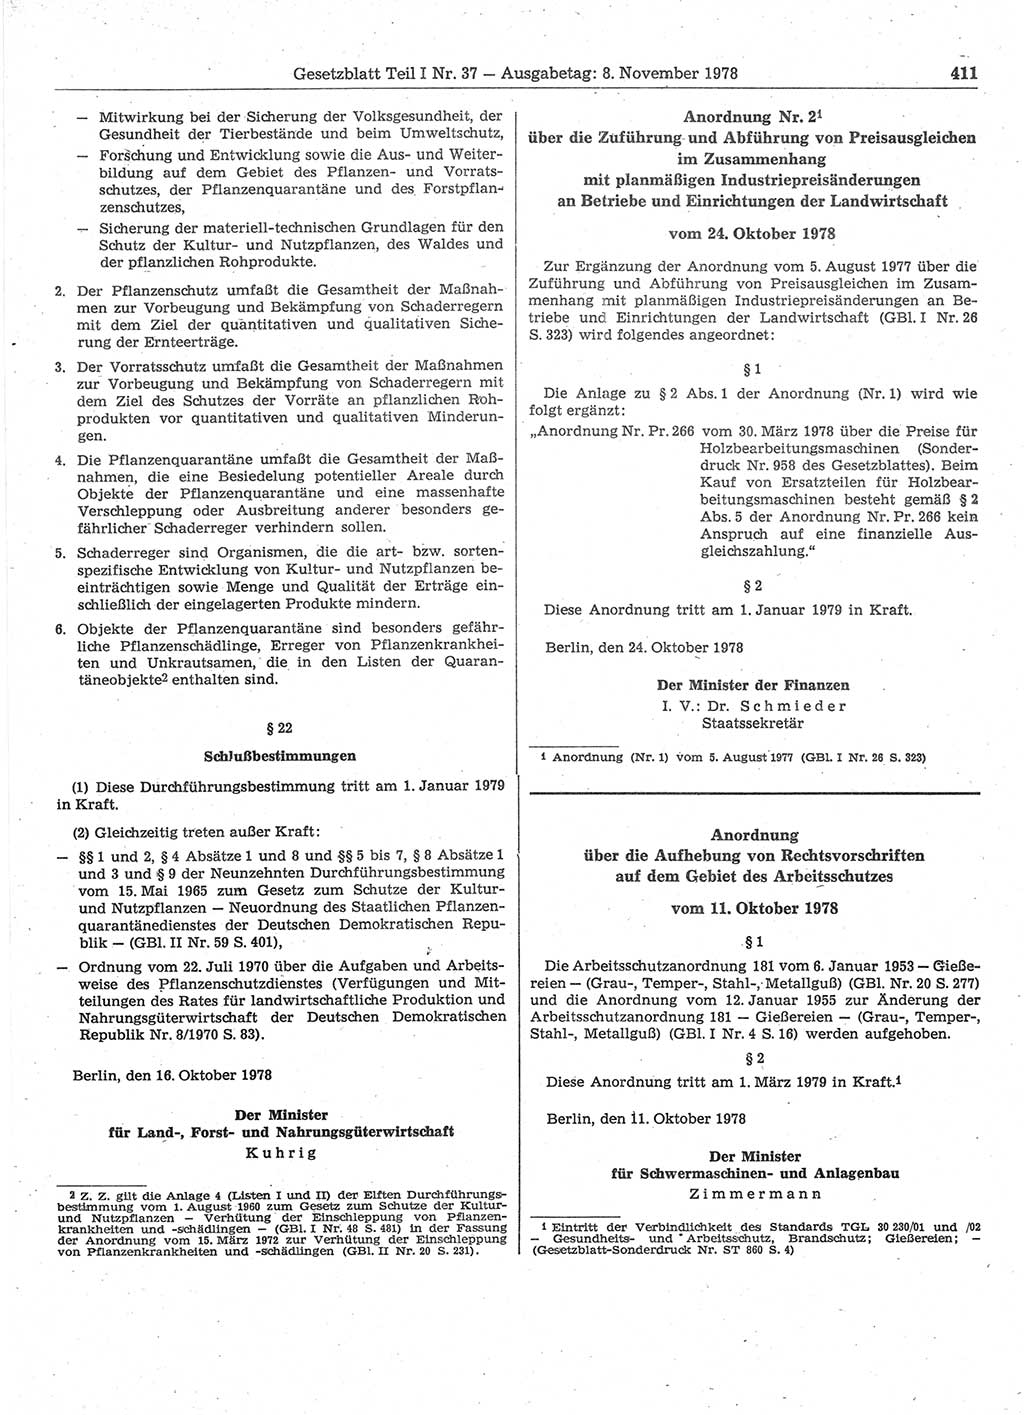 Gesetzblatt (GBl.) der Deutschen Demokratischen Republik (DDR) Teil Ⅰ 1978, Seite 411 (GBl. DDR Ⅰ 1978, S. 411)